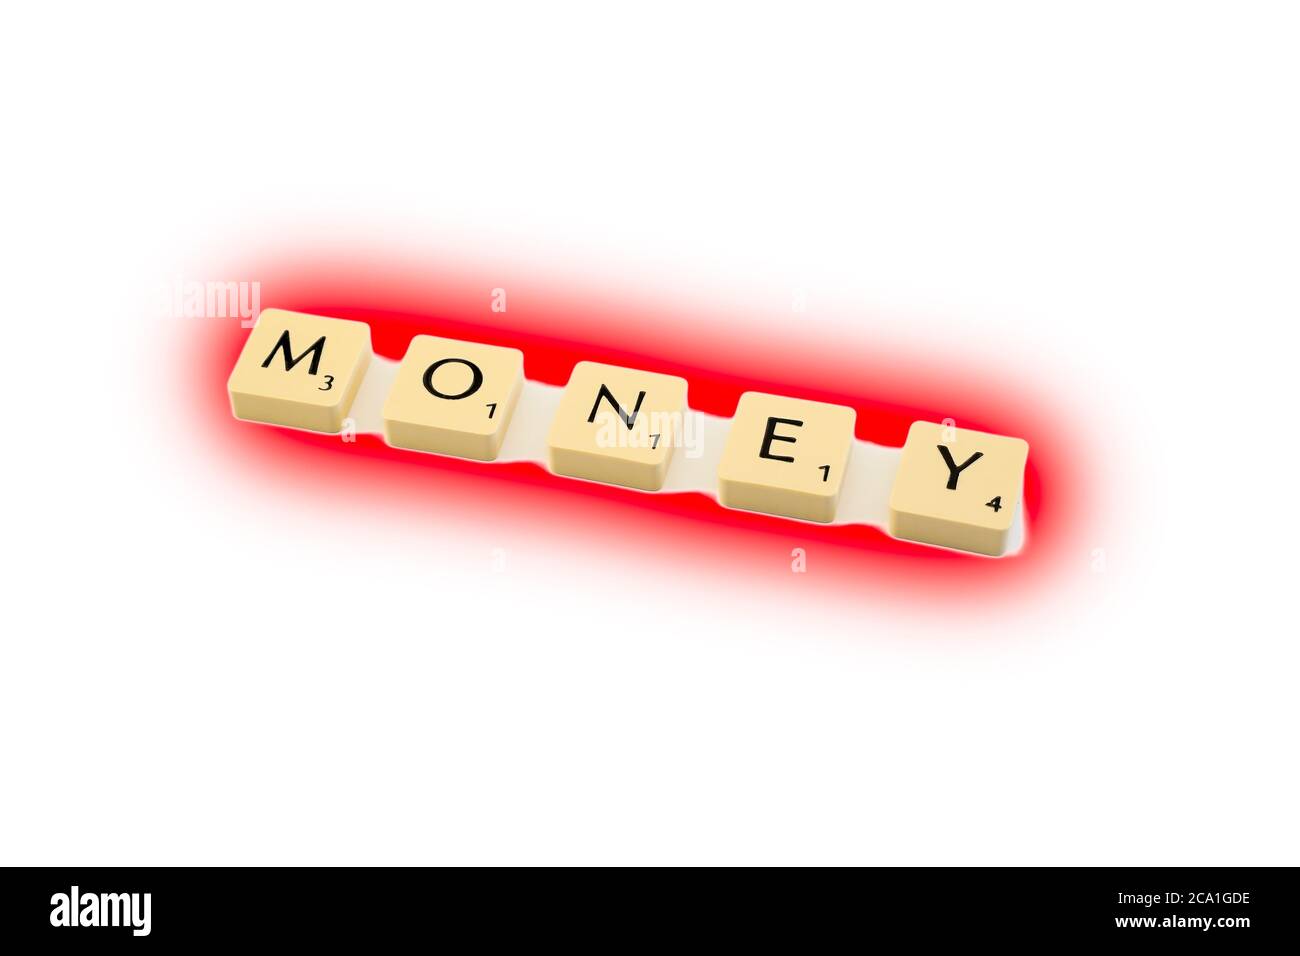 Scrabble Brettspiel Buchstaben Schreibweise das Wort GELD in rot, weiß Hintergrund hervorgehoben. Konzept in der roten, finanziellen Schwierigkeit. Stockfoto